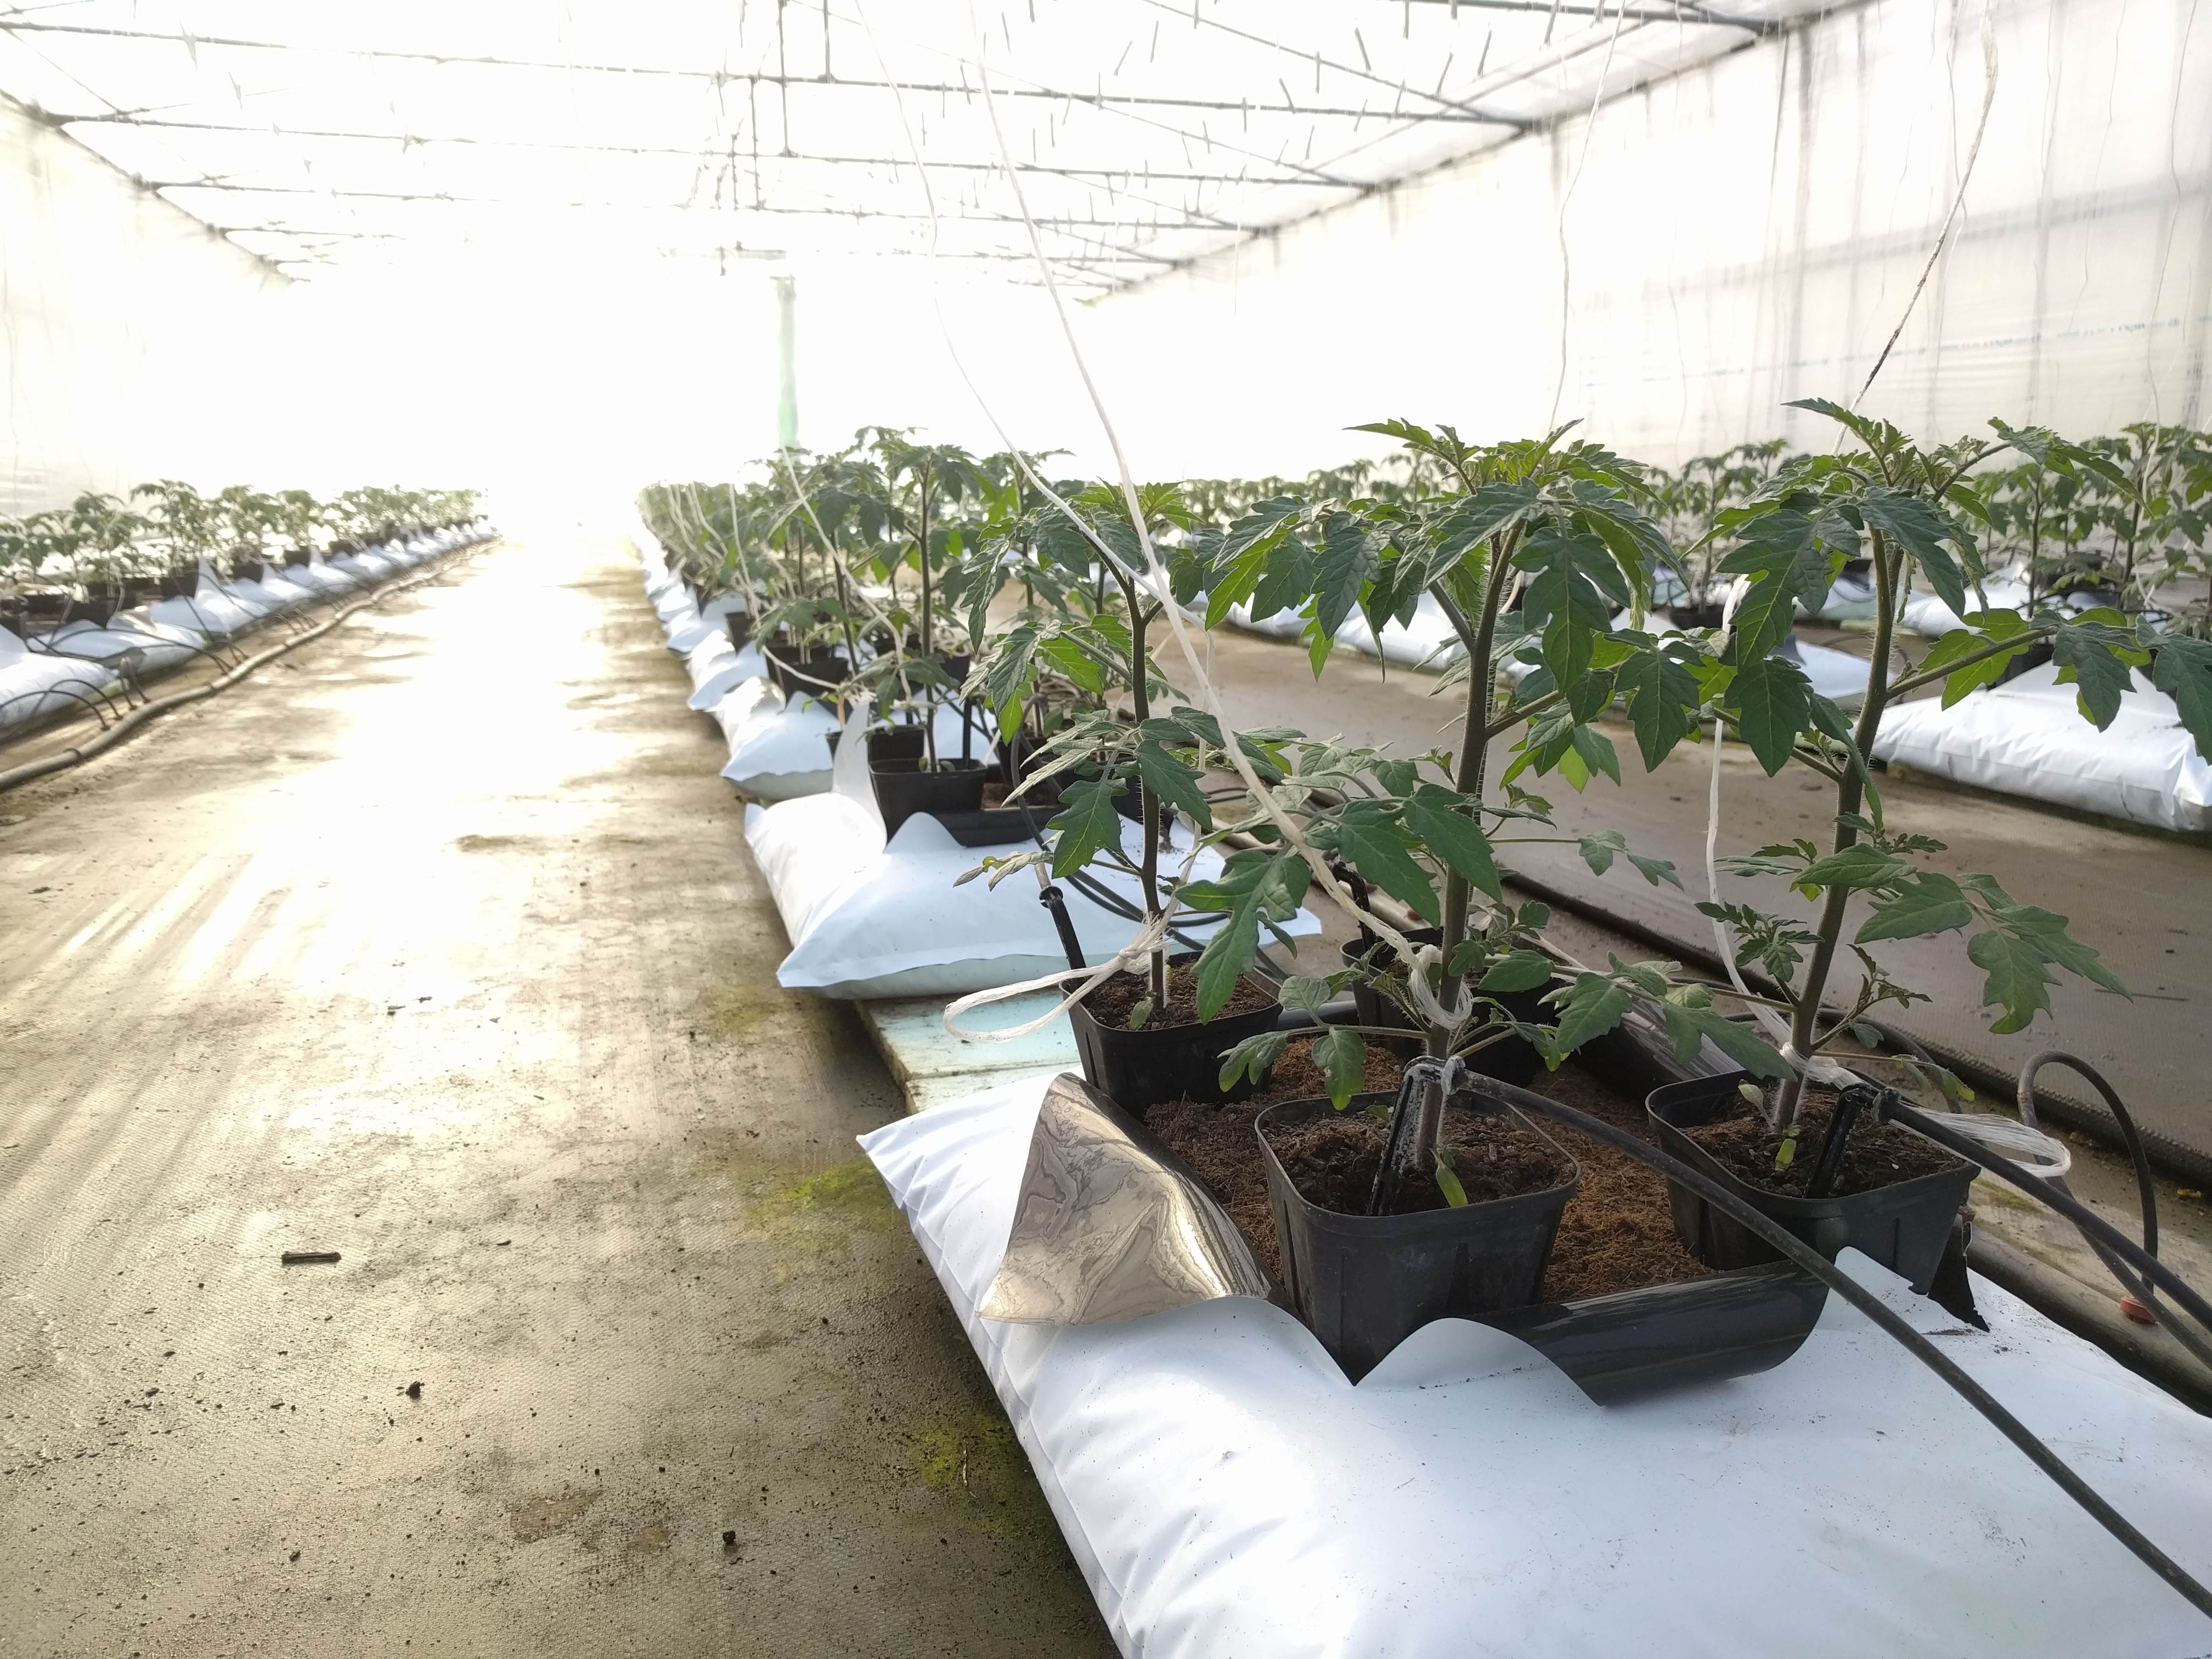 ミニトマト栽培 3月15日 定植2週間 花の観察 Mondo Group 公式 Hp ひと口の感動からすべてが始まった